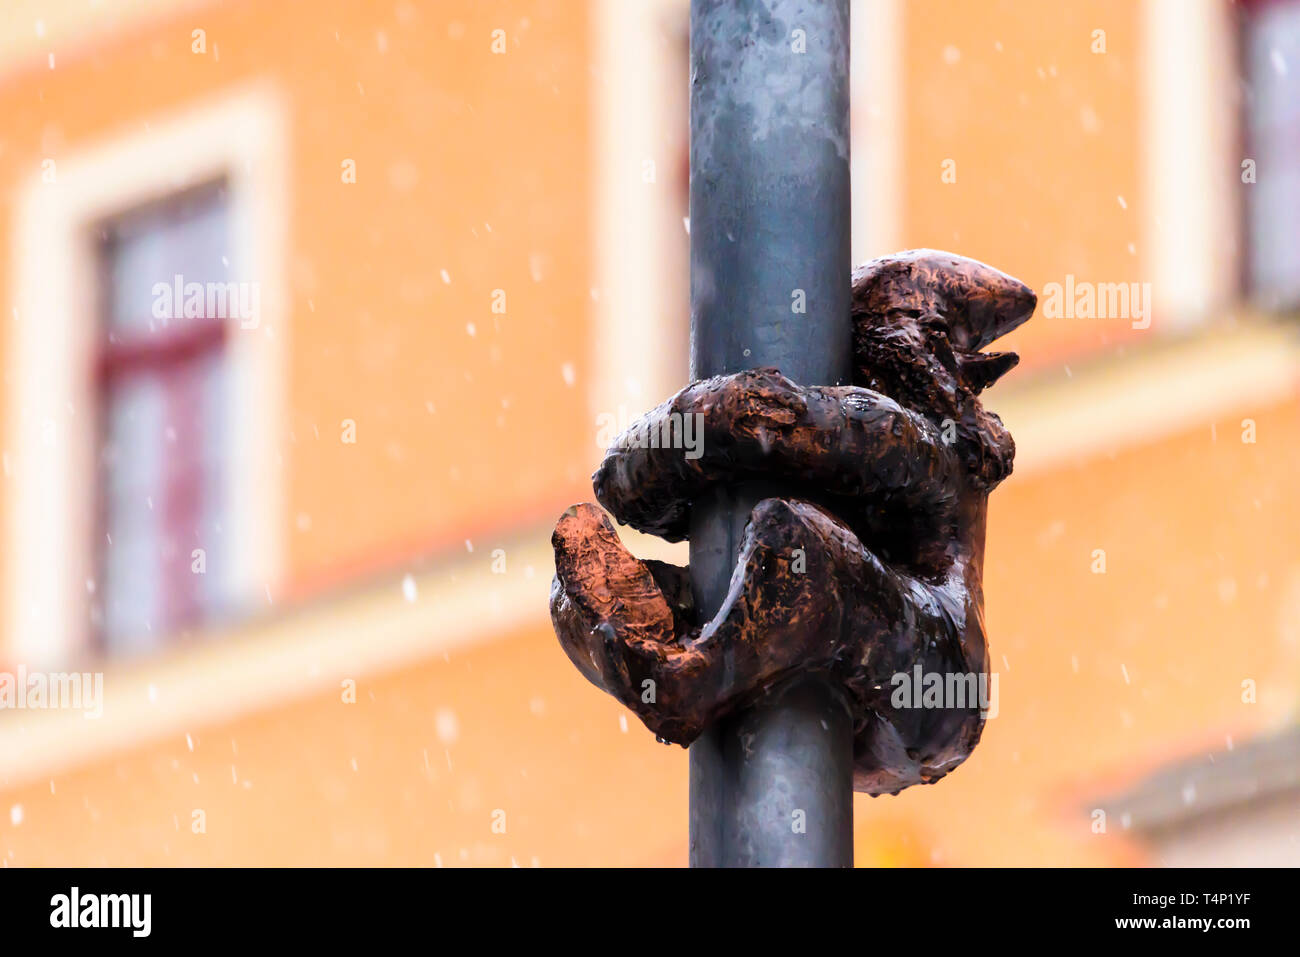 One of the brass gnomes (krasnale, krasnoludki) hanging onto a street light in Wrocław, Wroklaw, Poland Stock Photo